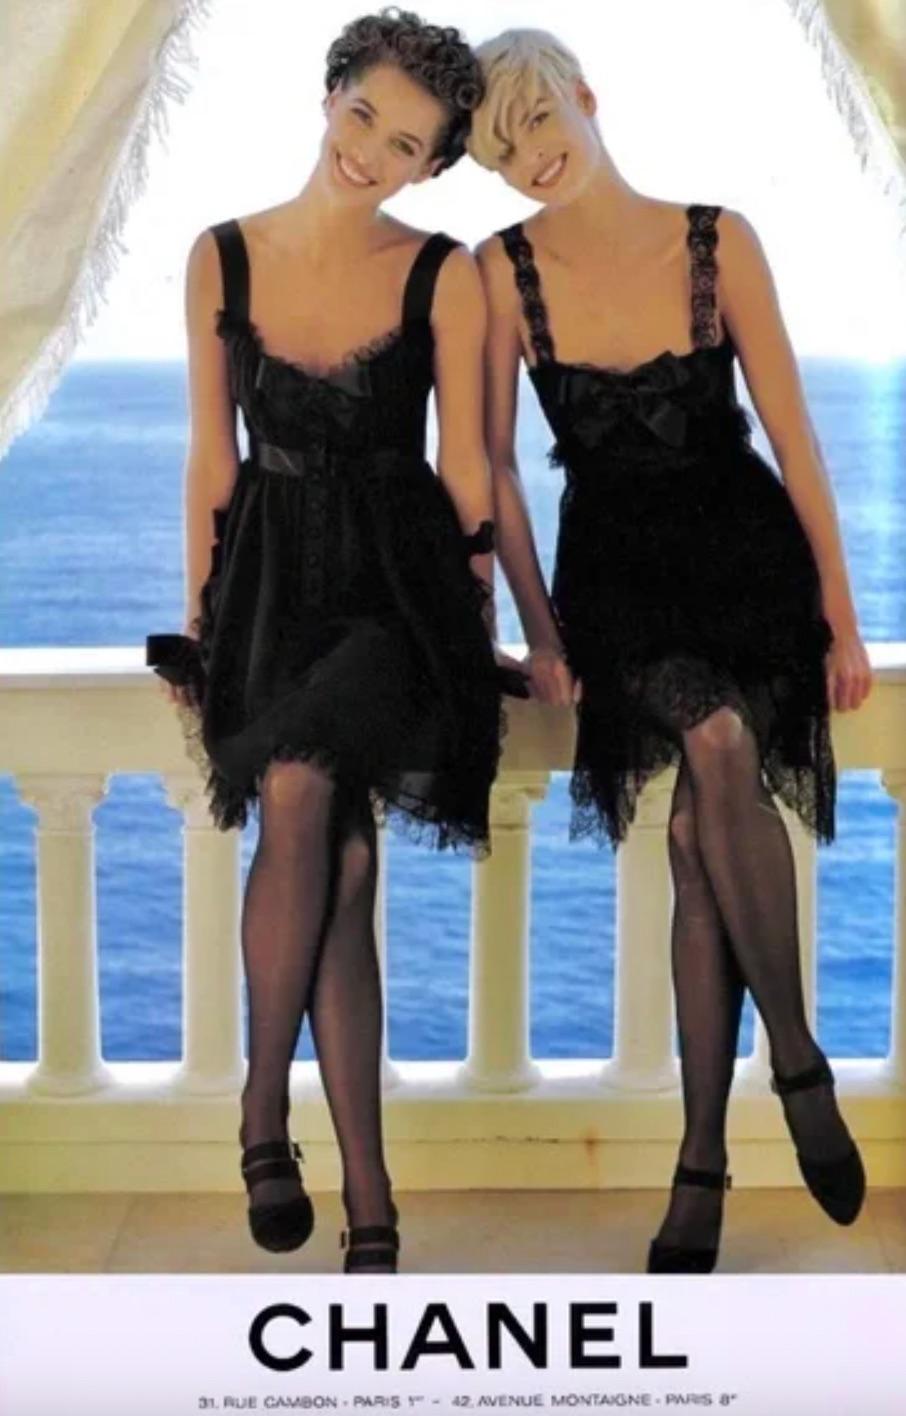 La petite robe noire de Chanel printemps/été 1991 est une pièce étonnante qui incarne l'élégance classique de Chanel. Conçue par Karl Lagerfeld et présentée par les top-modèles Claudia Schiffers et Christy Turlington, cette mini robe en soie est